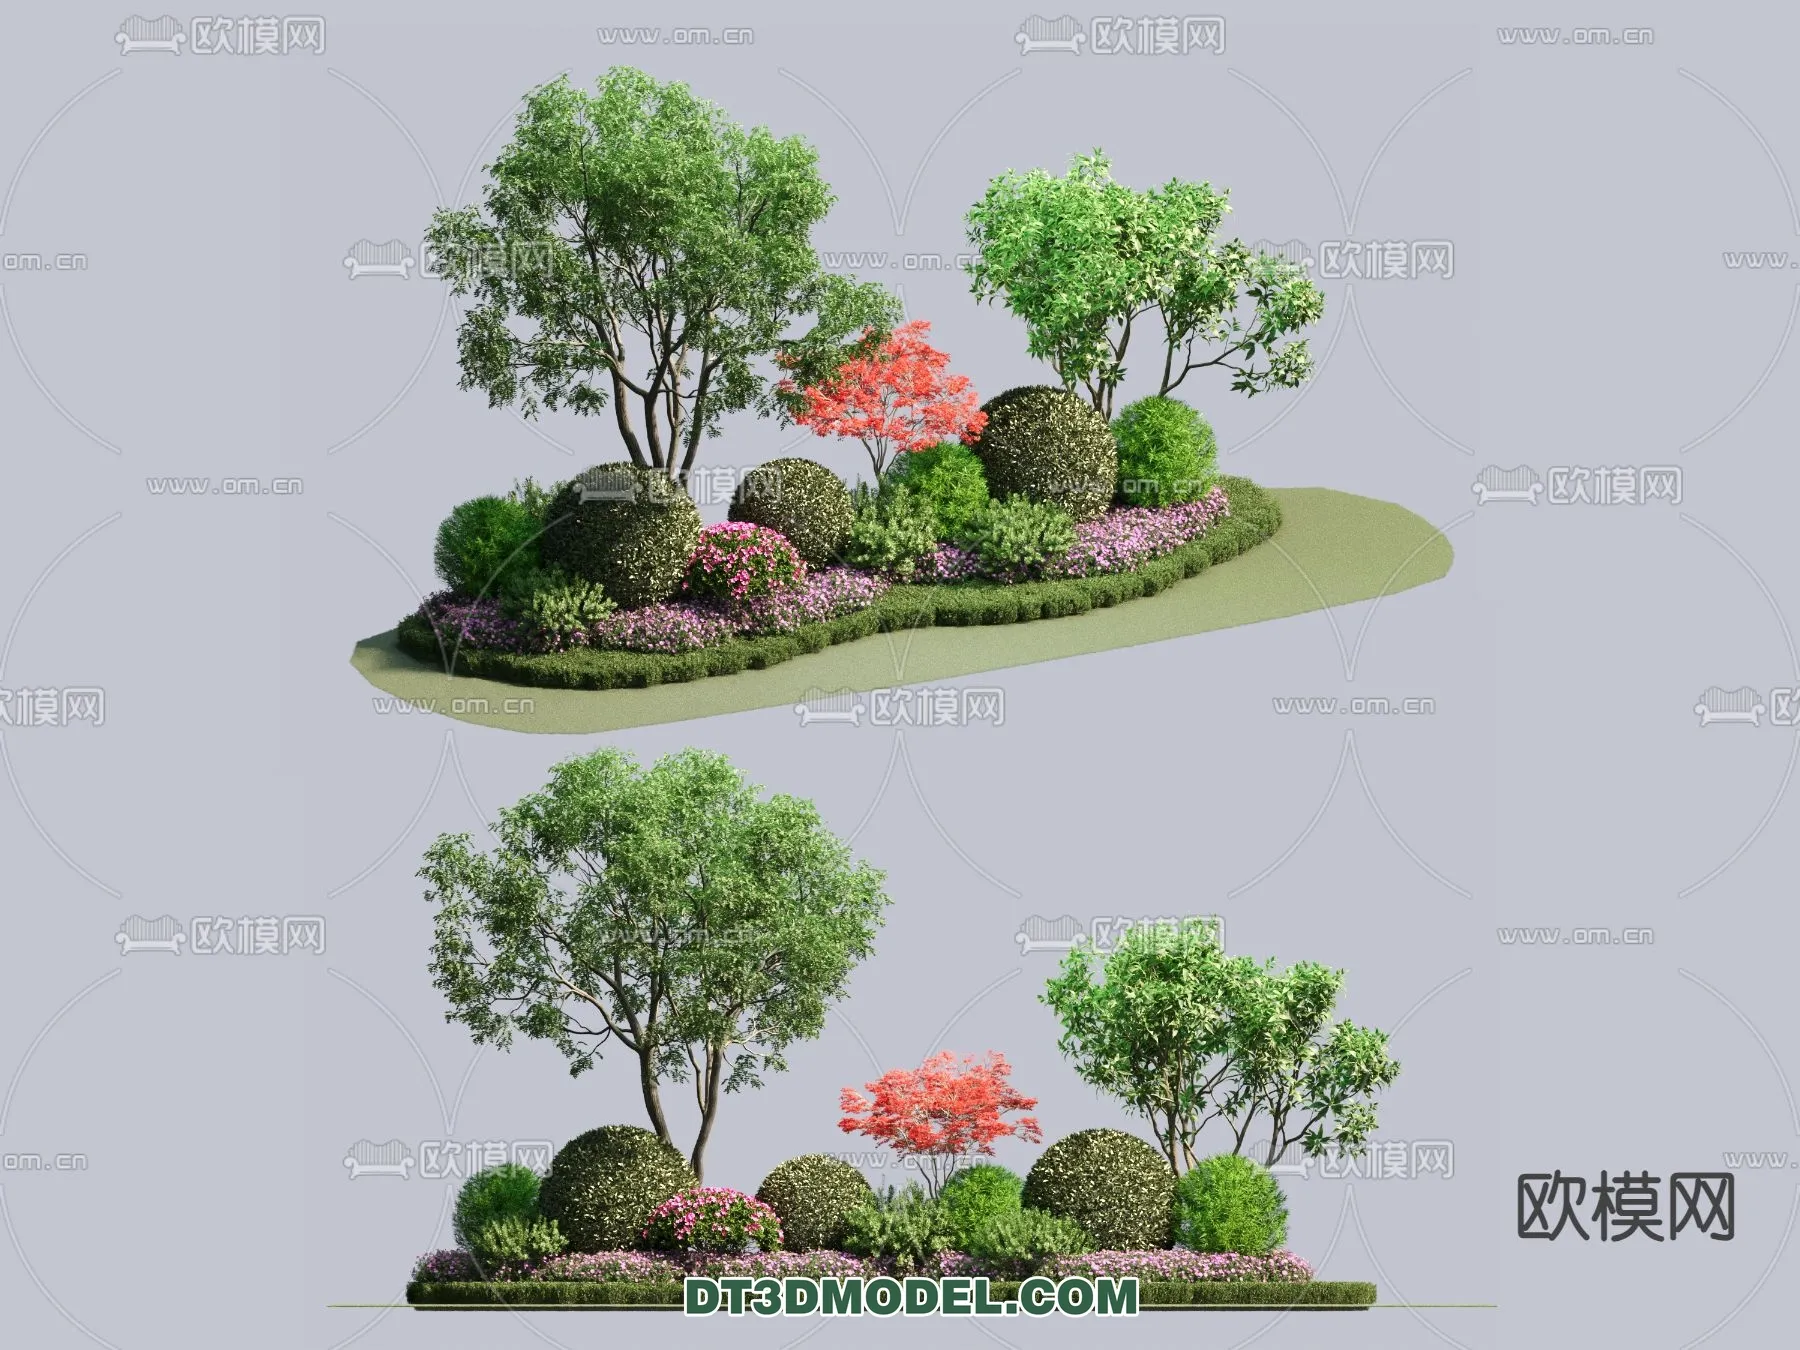 PLANTS – BUSH – CORONA – 3D MODEL – 396